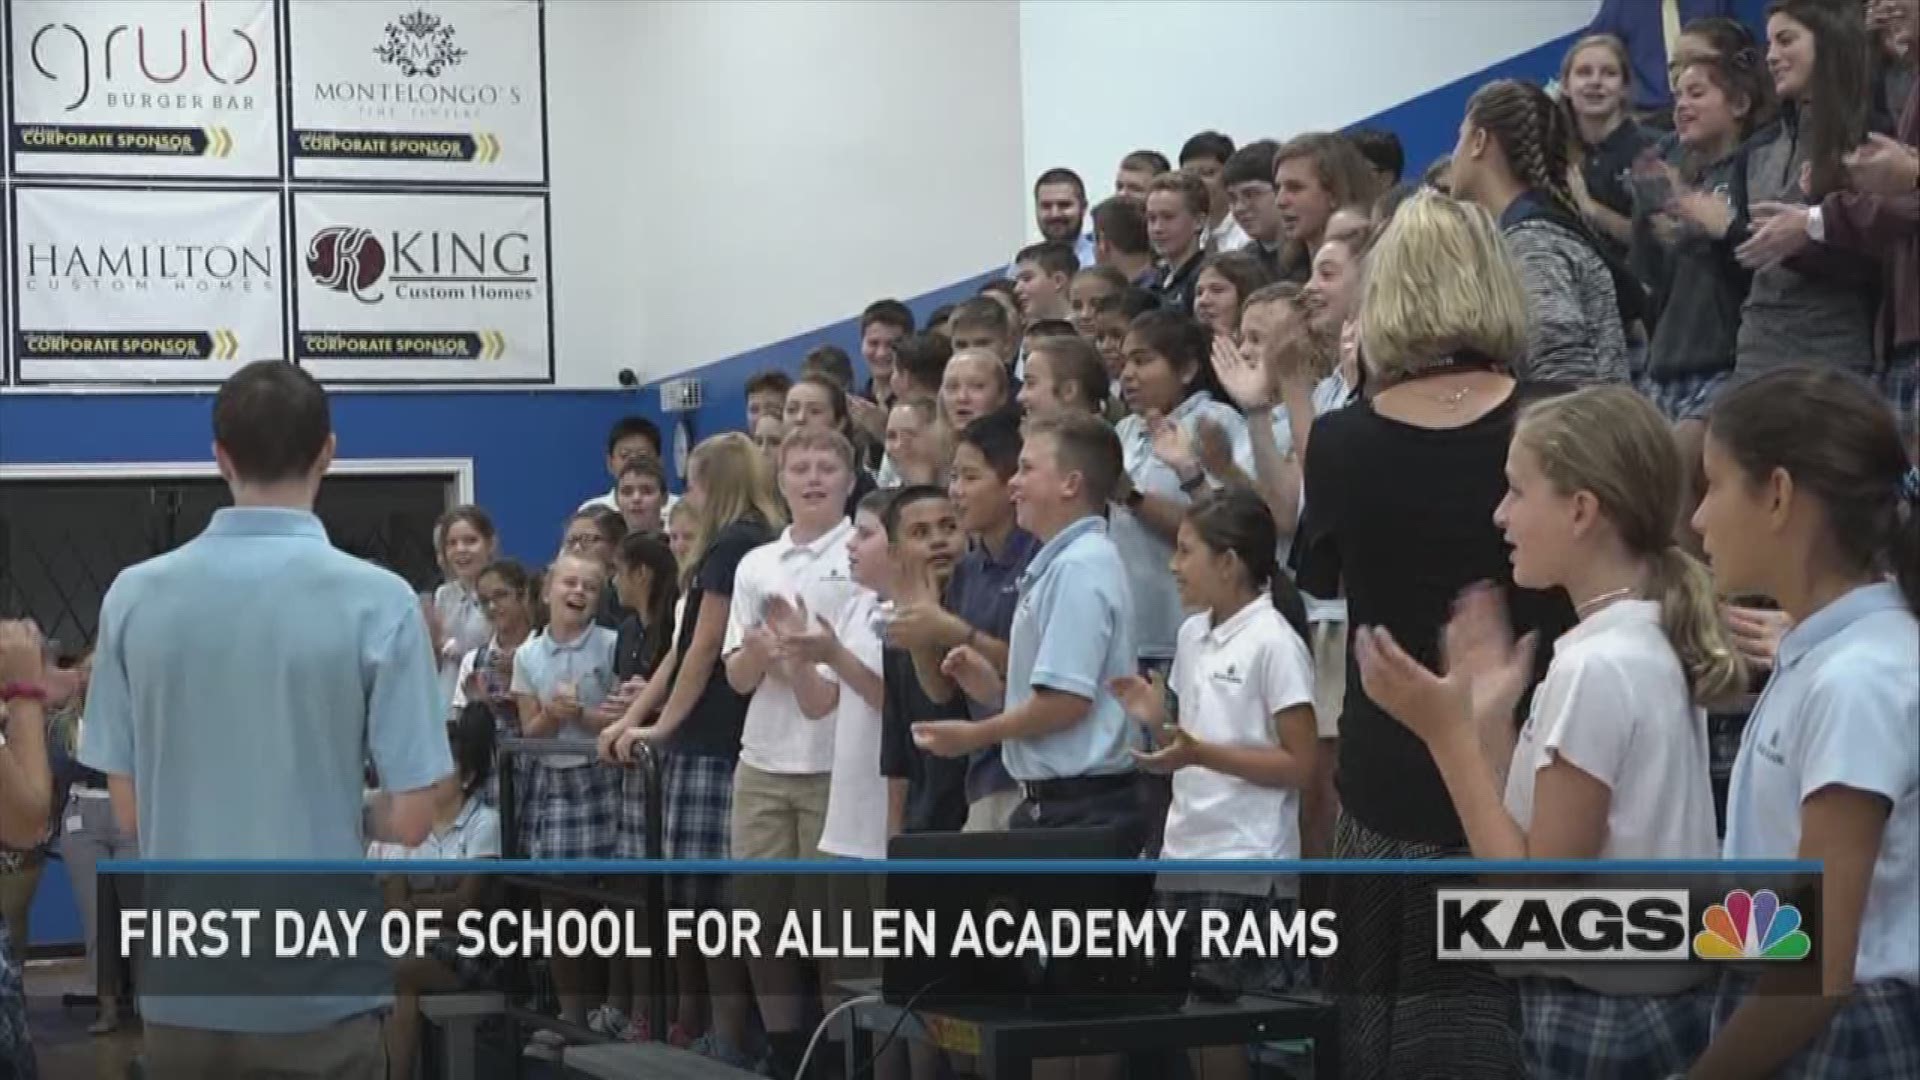 Allen Academy began their 132nd school year today.